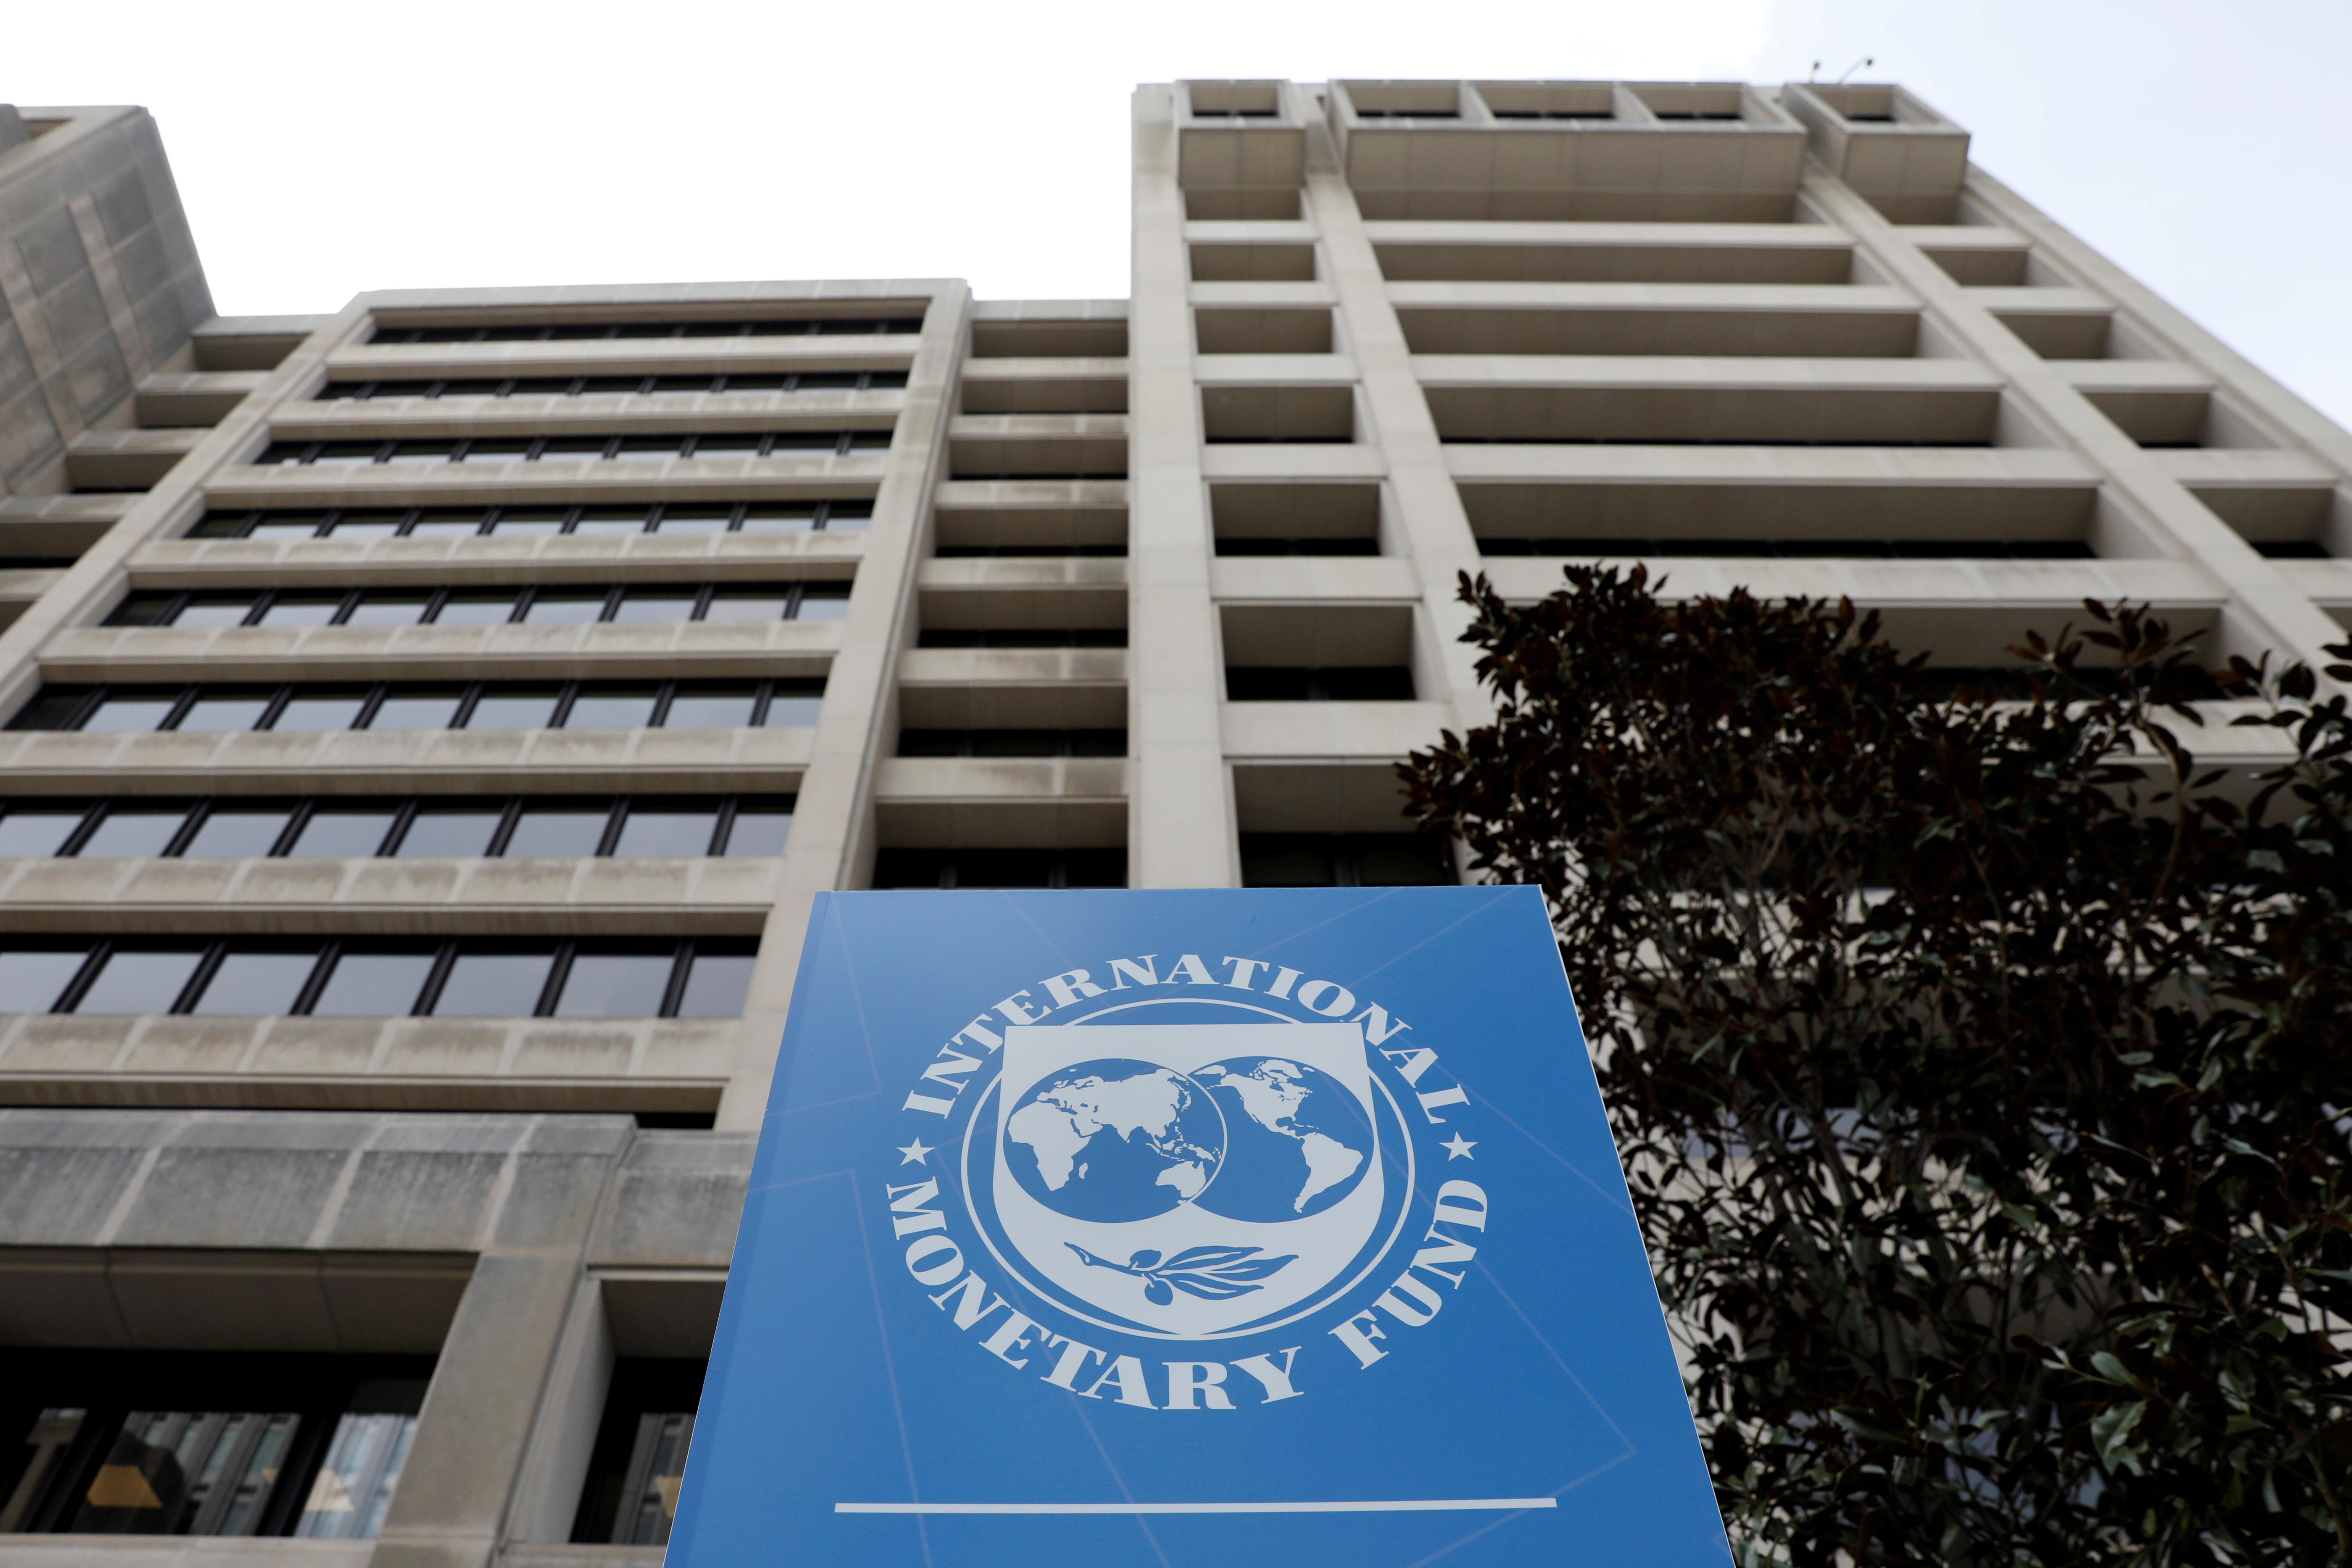 Мвф валюта. Международный валютный фонд (МВФ) - International monetary Fund (IMF). Штаб квартира МВФ В Вашингтоне. Здание МВФ США. Флаг МВФ.